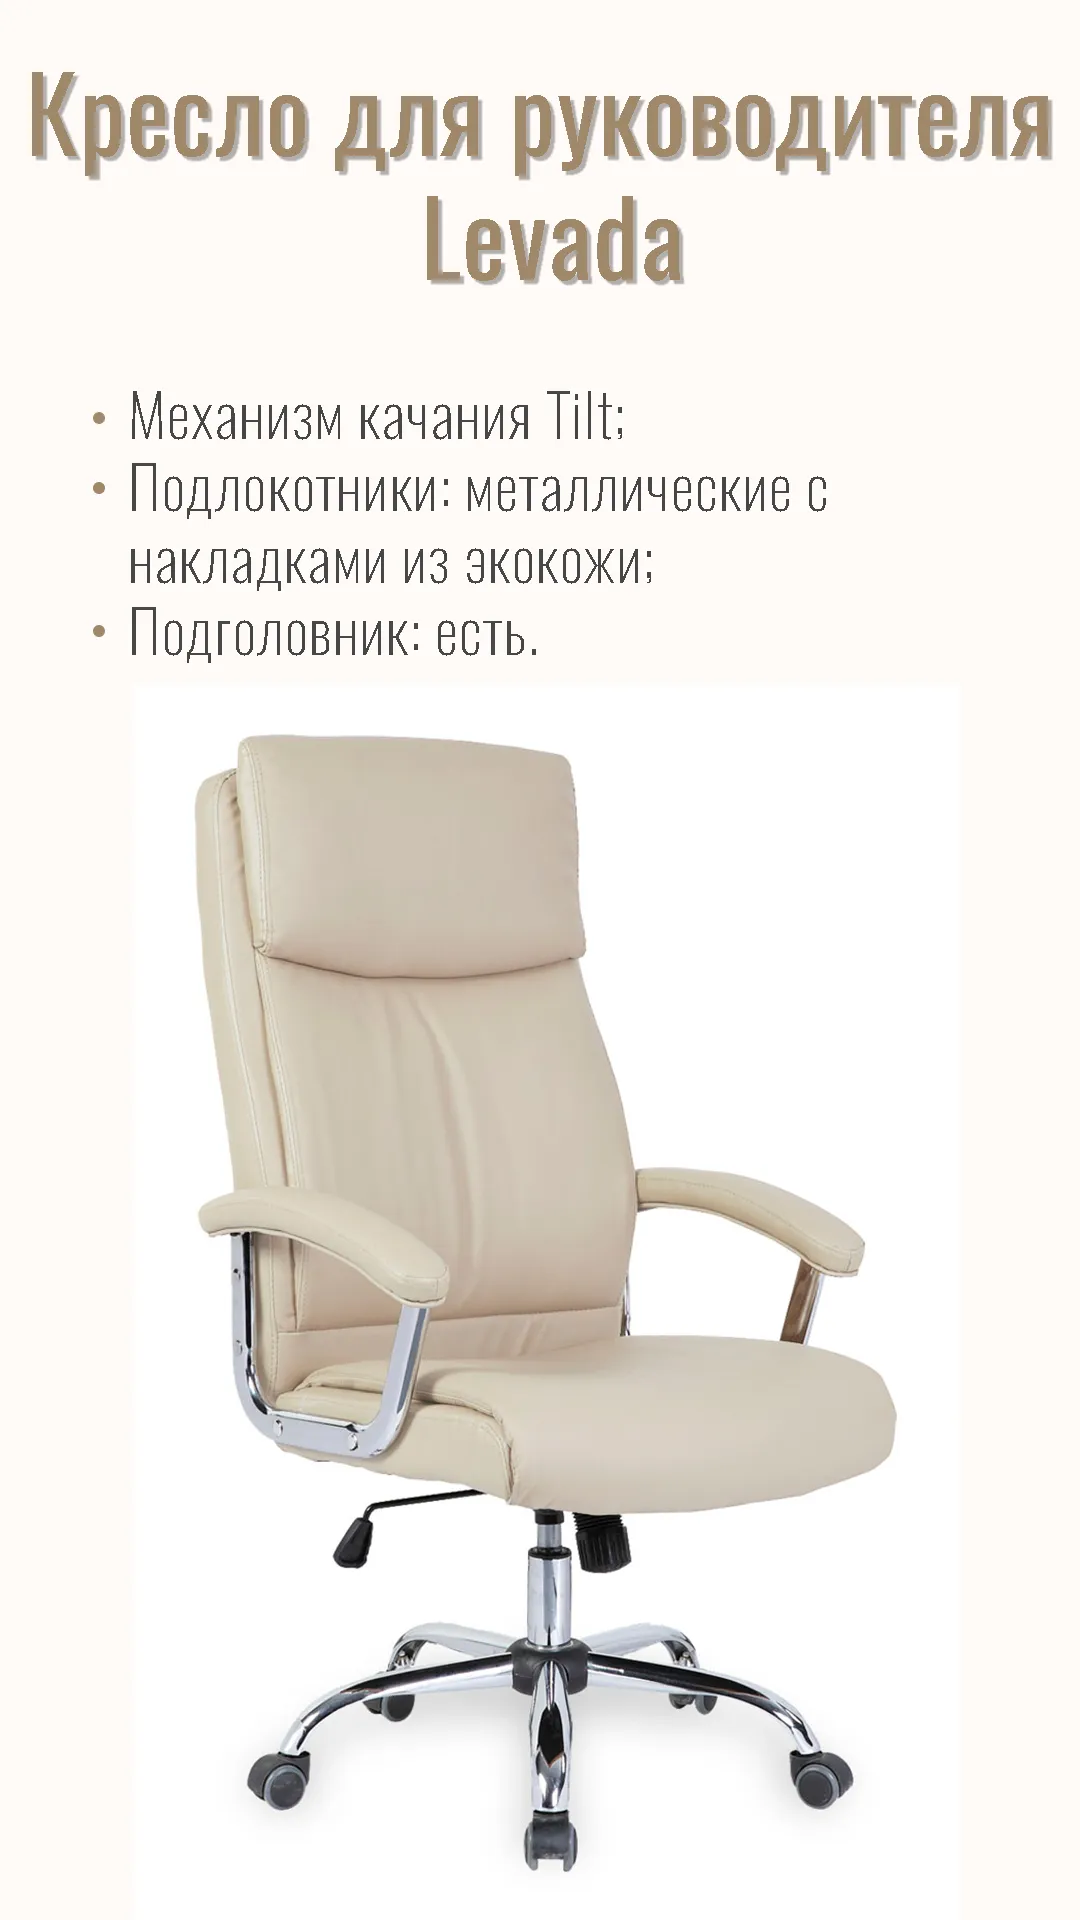 Кресло для руководителя Levada 45601 кремовый